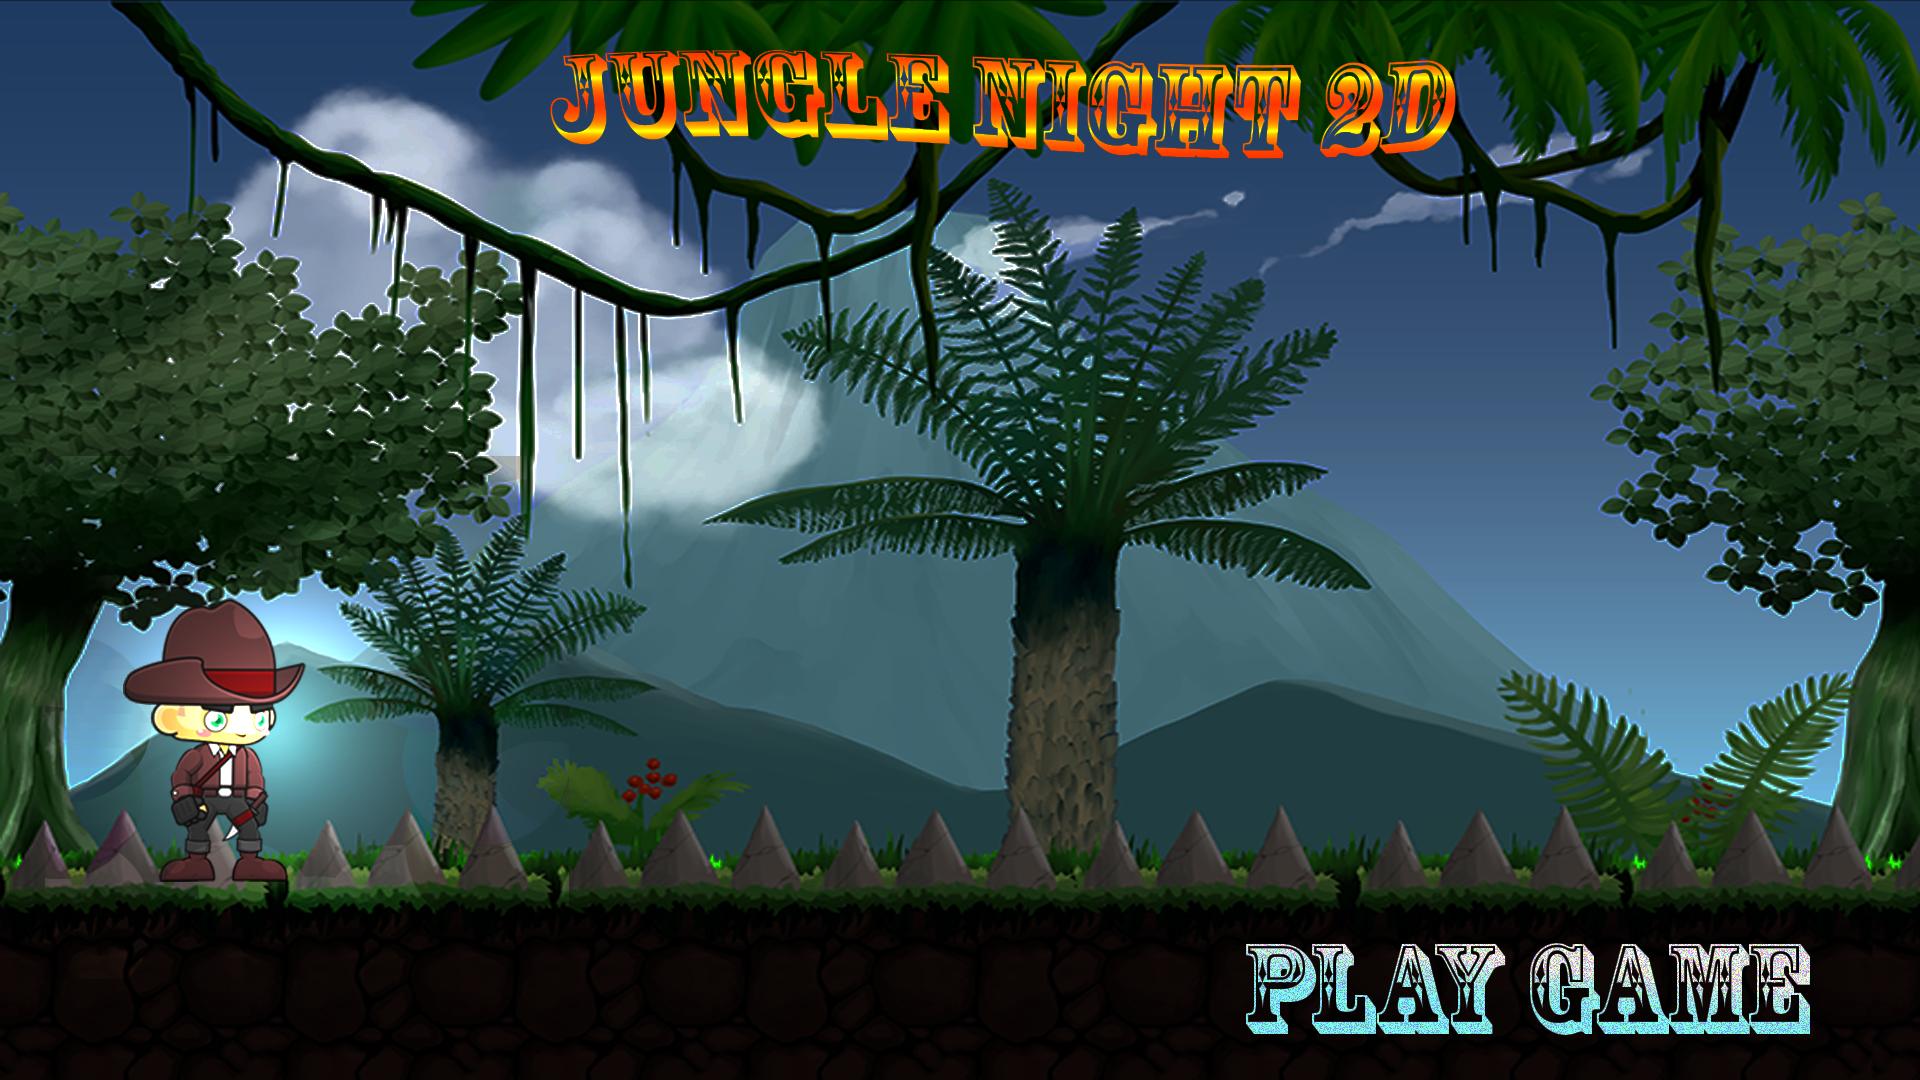 Игра про джунгли. Игра джунгли Tomy. Игра про исследователей в джунглях. Игры флеш игры джунгли побег. Начальный экран игры джунгли.